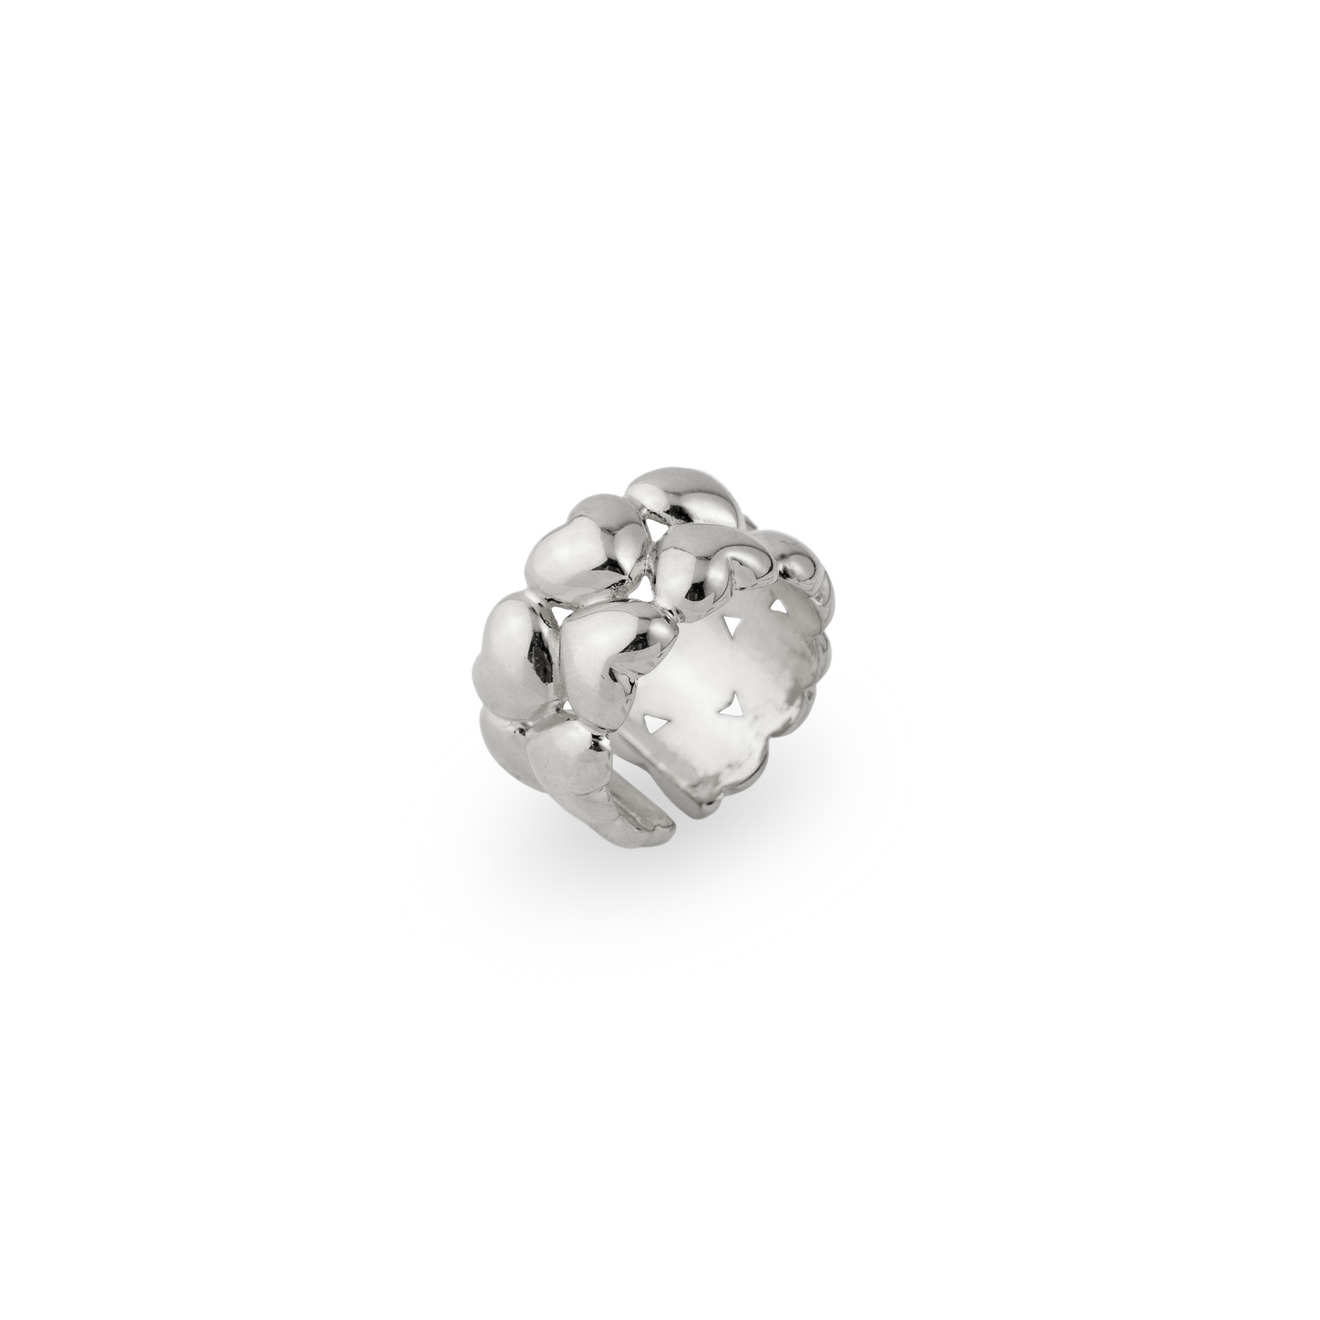 lisa smith серебристое кольцо с кисточкой из цепочек Aloud Незамкнутое серебристое кольцо из сердечек